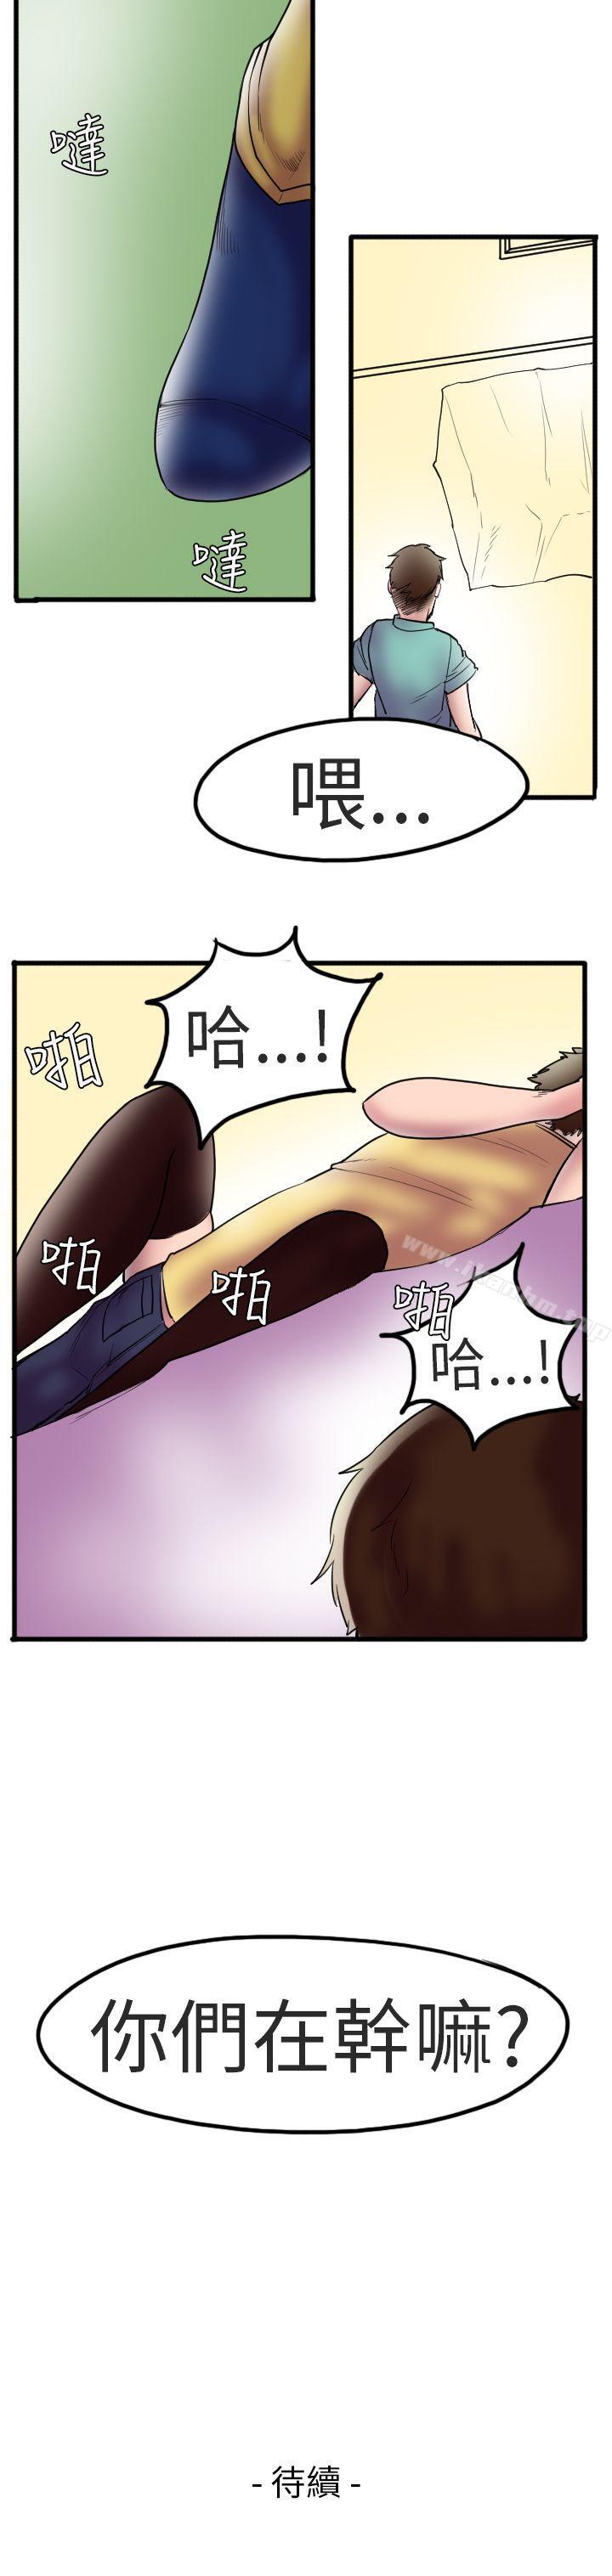 漫画韩国 秘密Story第二季   - 立即阅读 第二季 床與墻壁之間(上)第16漫画图片